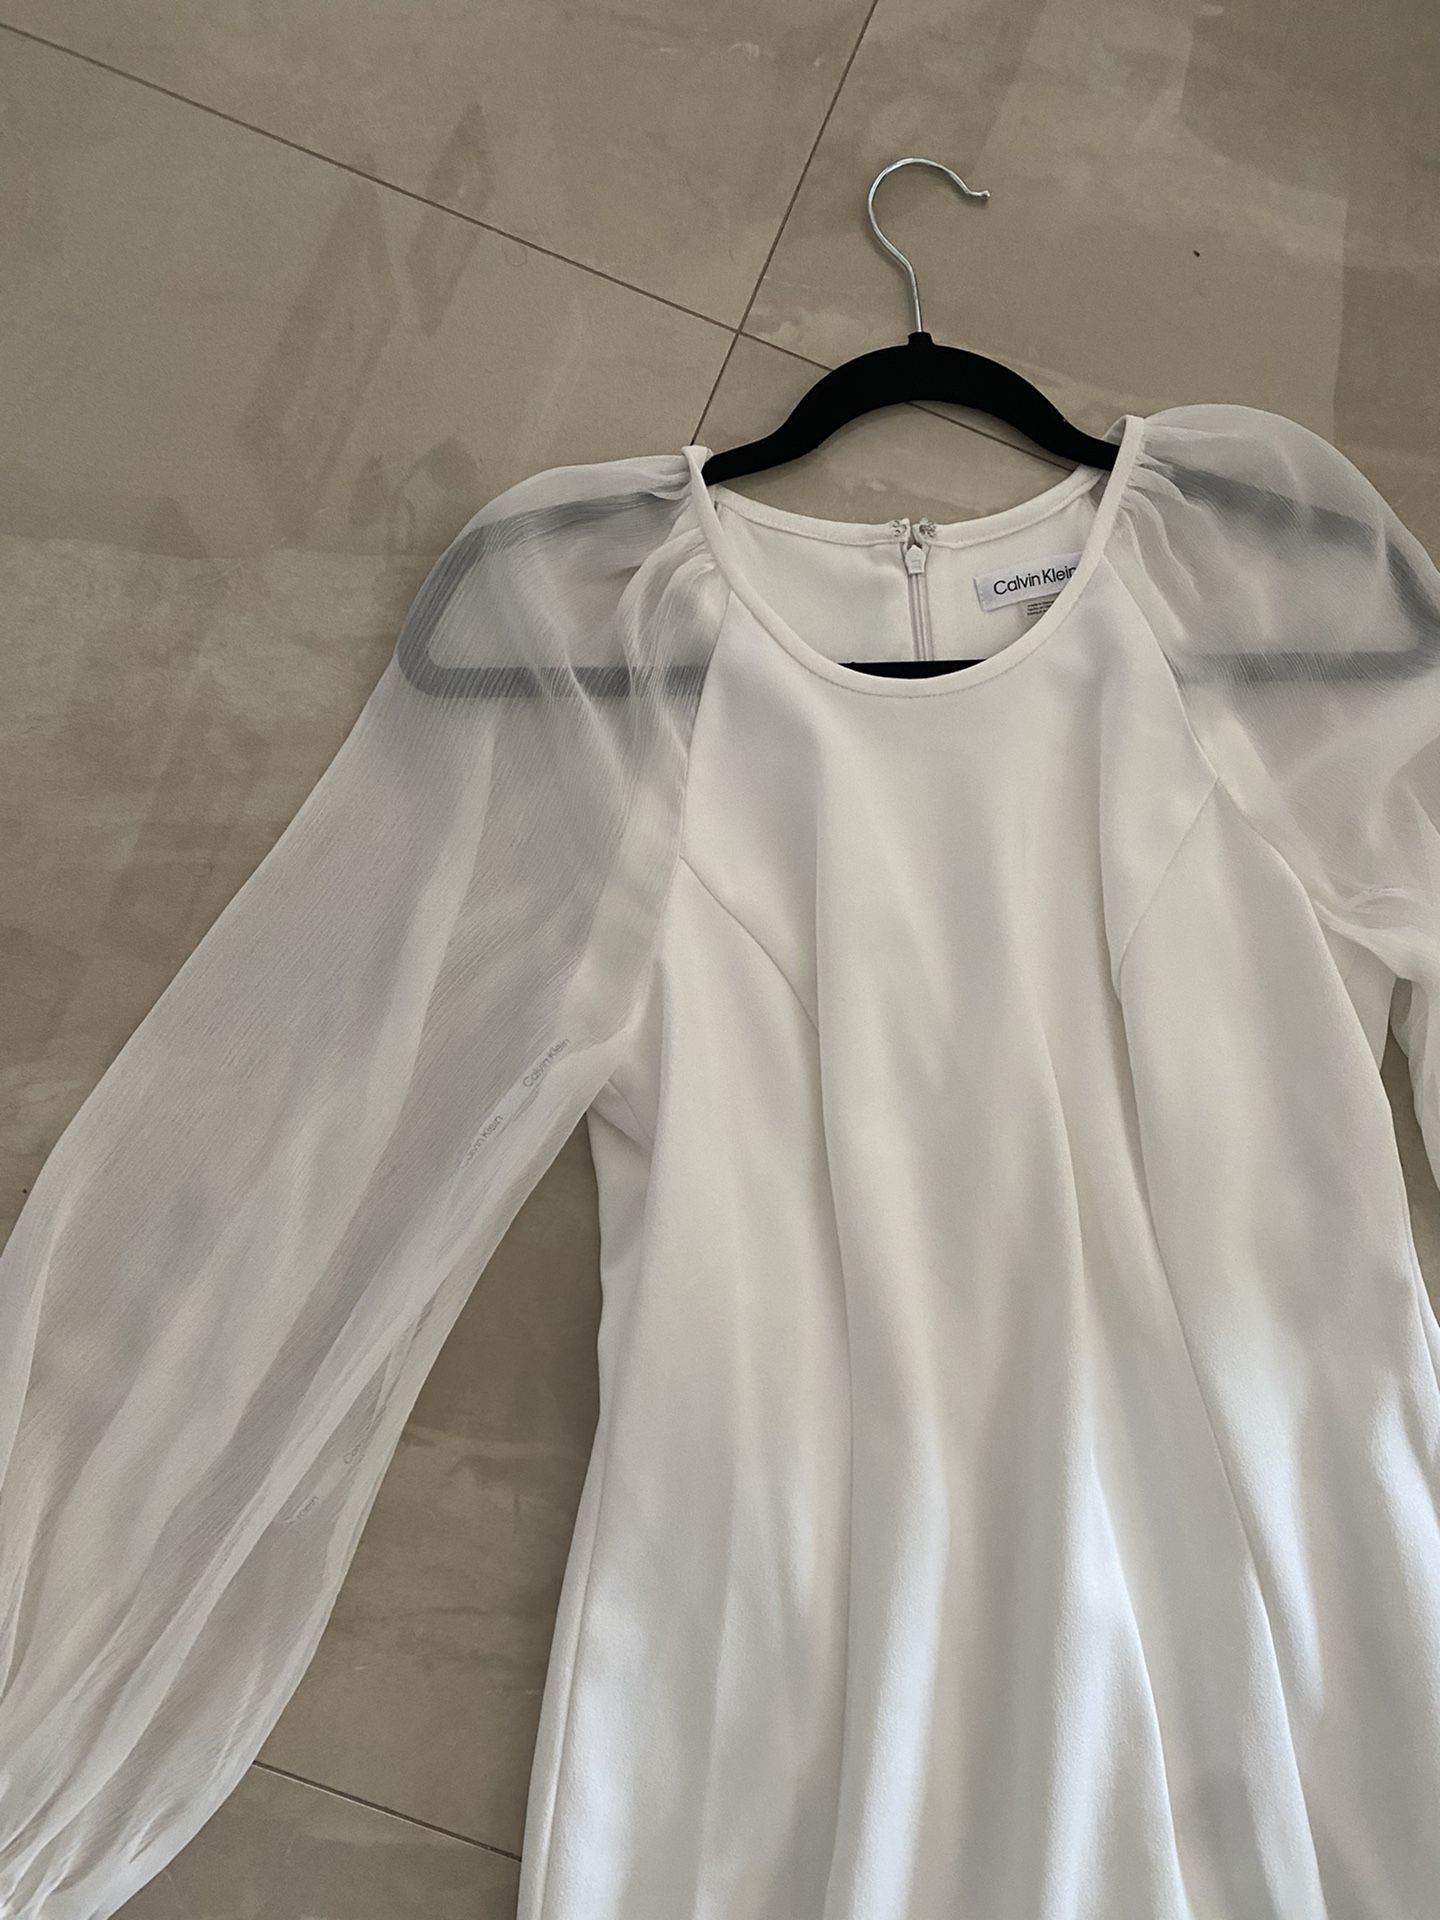 Calvin Klein White Dress Size 8